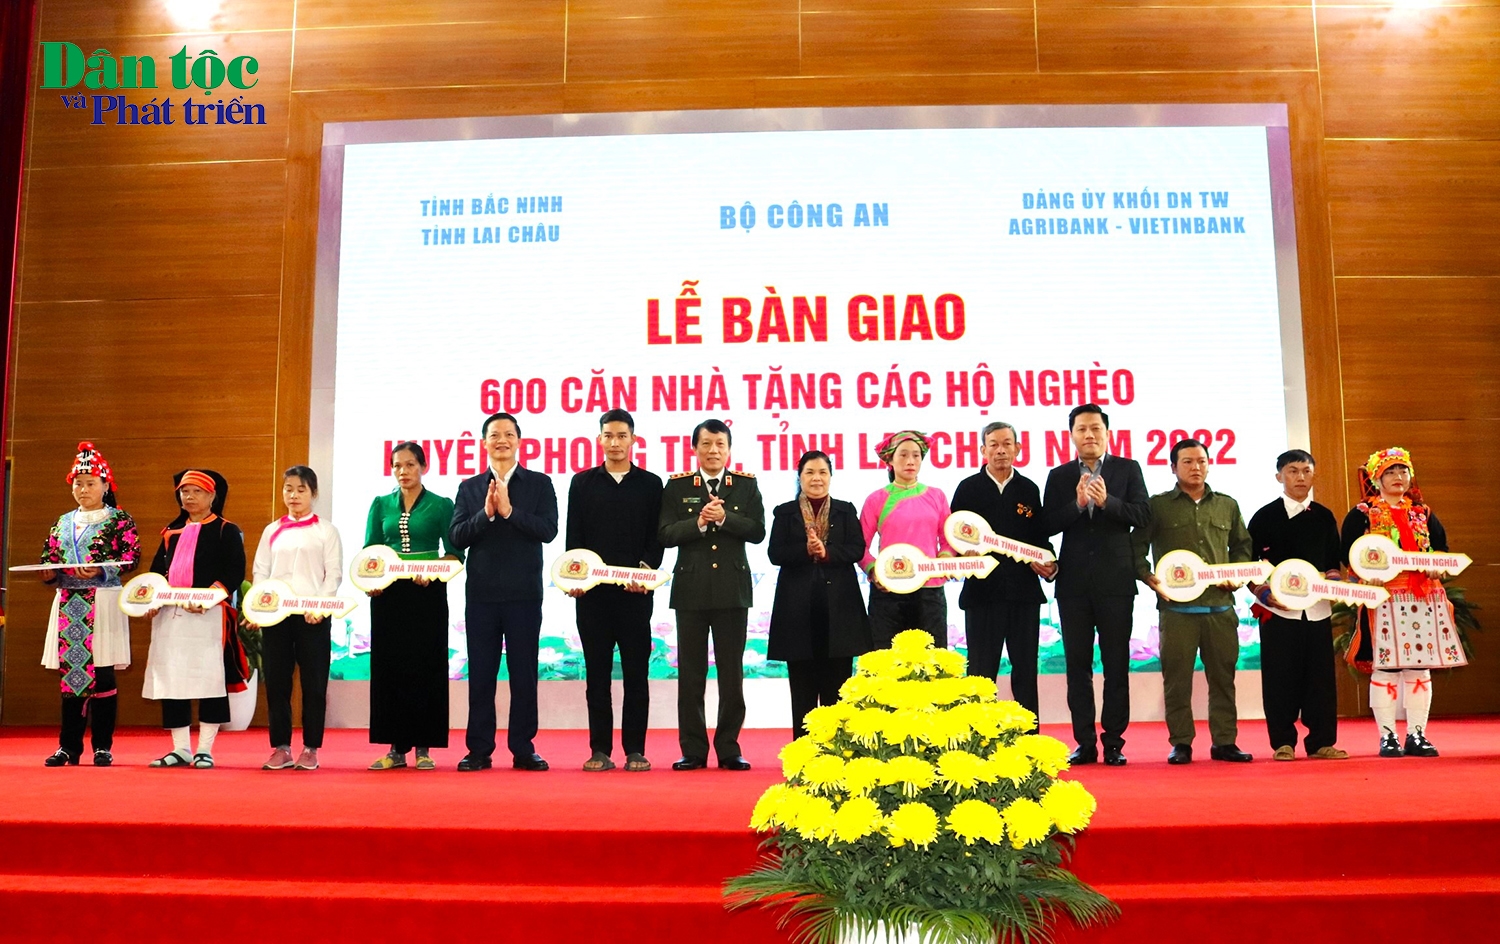 Thứ trưởng Bộ Công an Lương Tam Quang trao bảng tượng trưng 600 căn nhà tặng các hộ nghèo thuộc huyện Phong Thổ, tỉnh Lai Châu